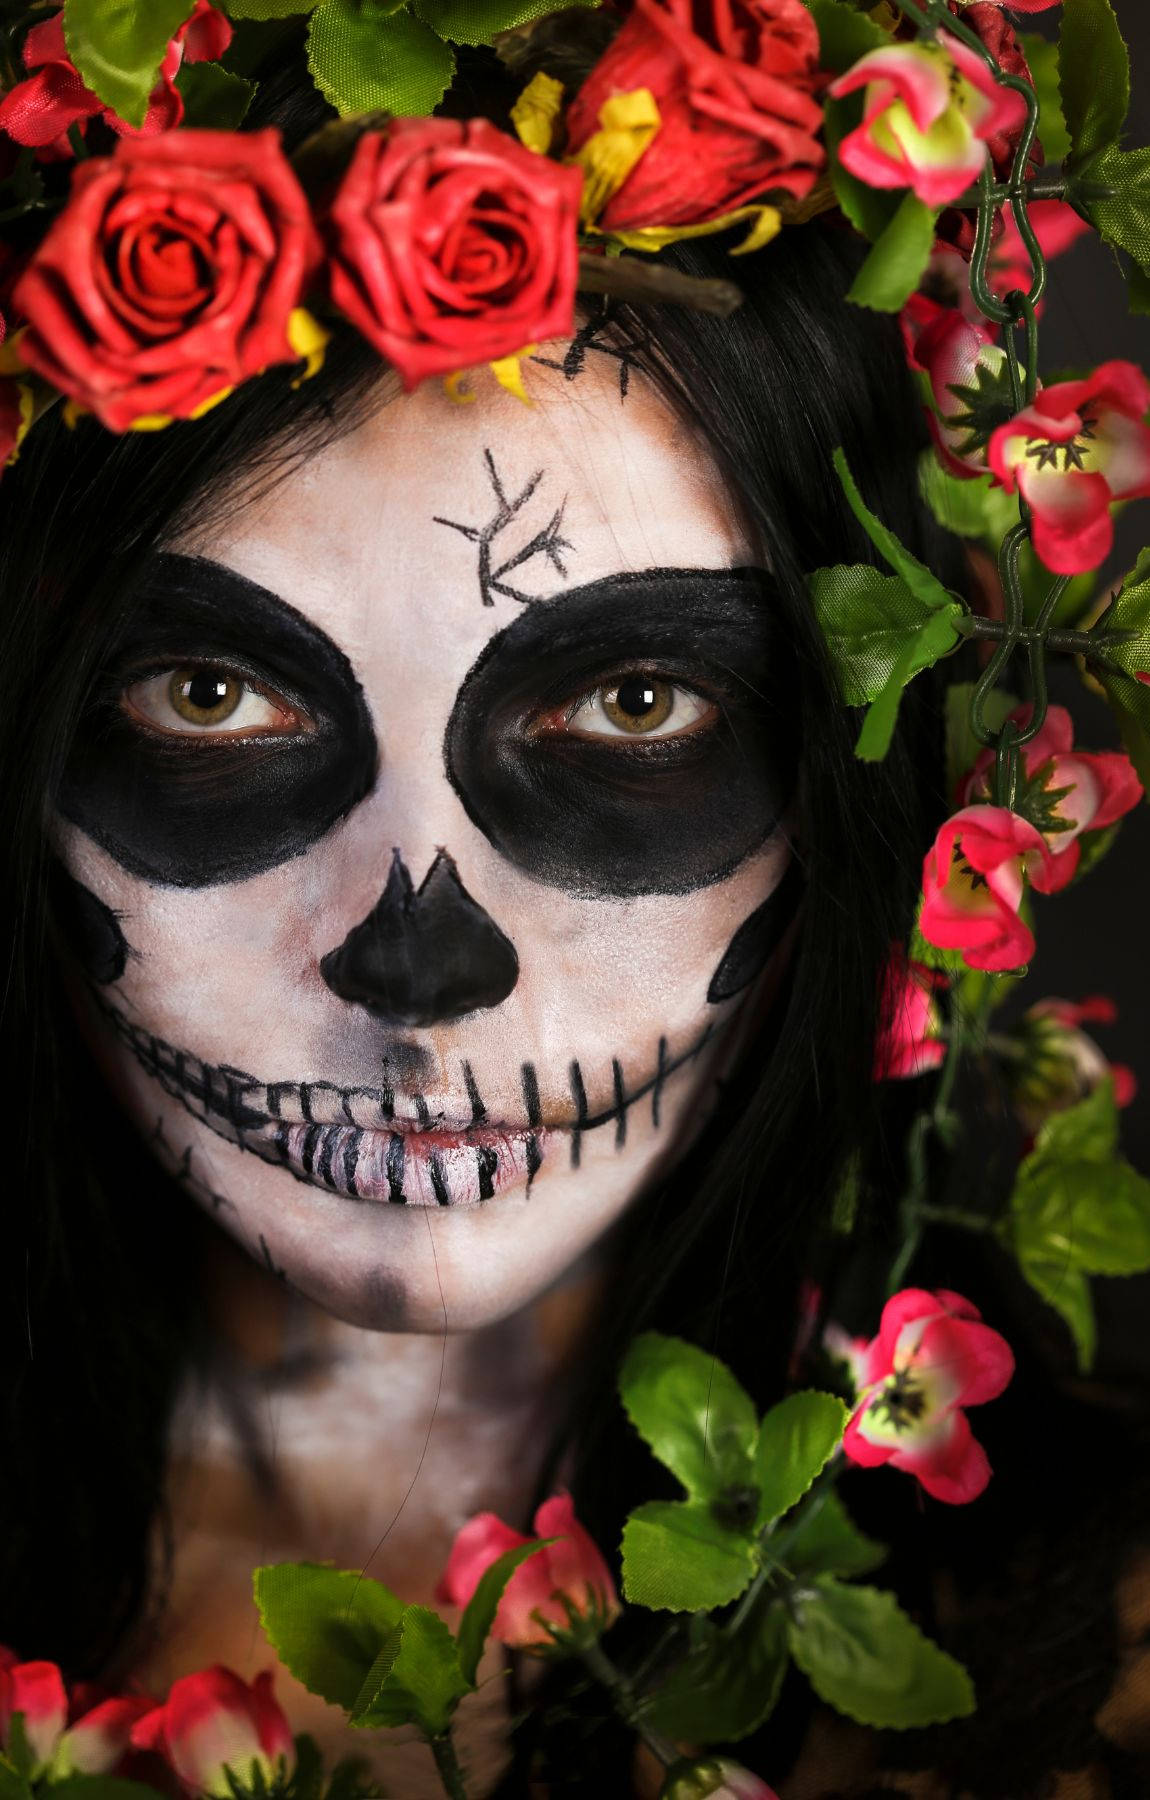 Enkvinna Med Ett Skull Ansikte Och Blommor I Håret Wallpaper